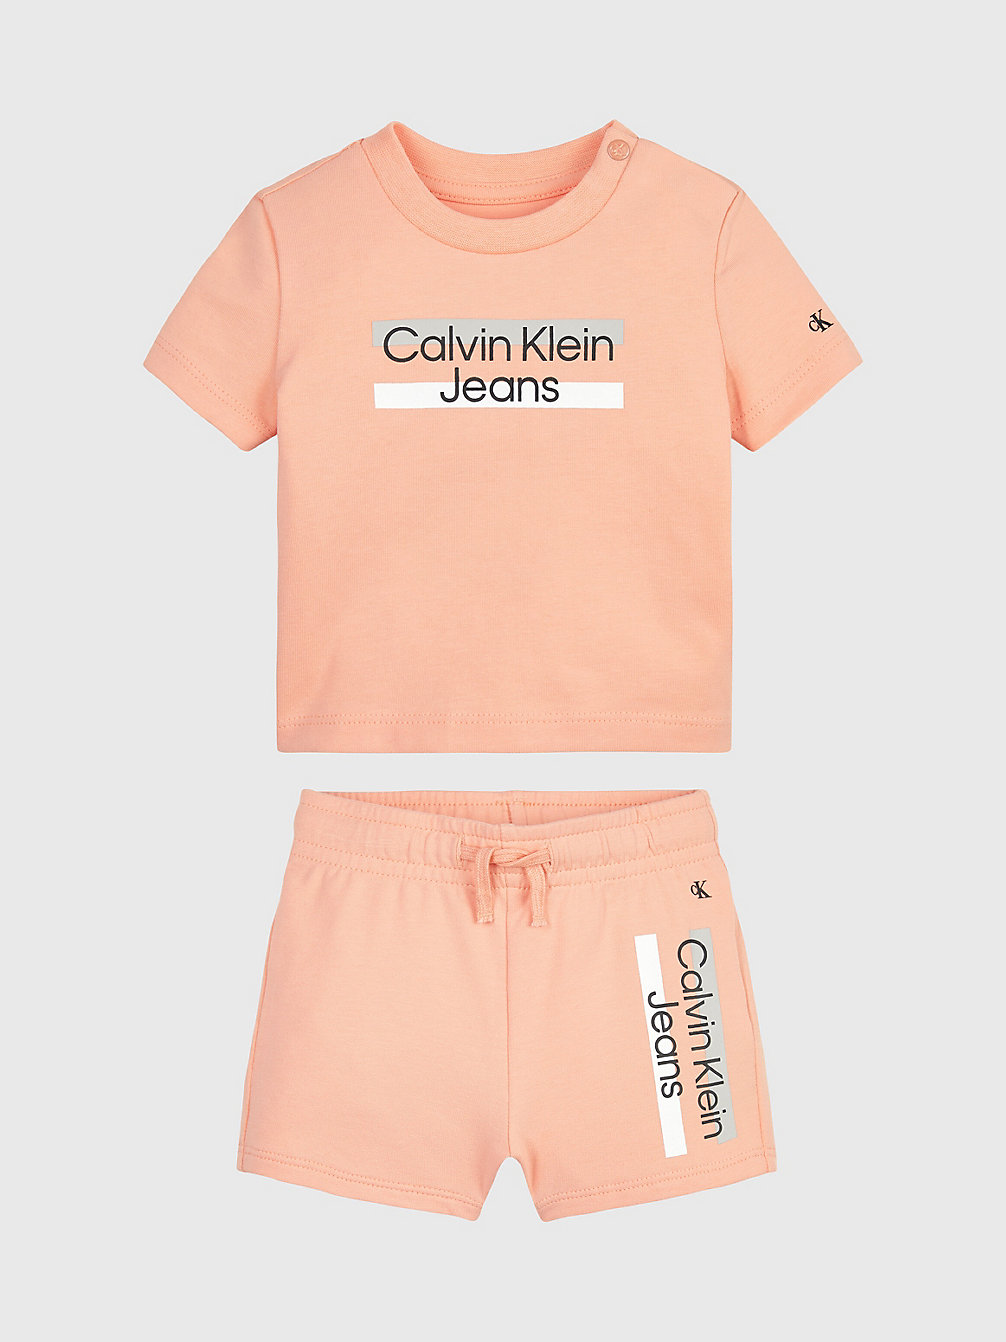 FRESH CANTALOUPE Ensemble T-Shirt Et Short Pour Nouveau-Né undefined newborn Calvin Klein